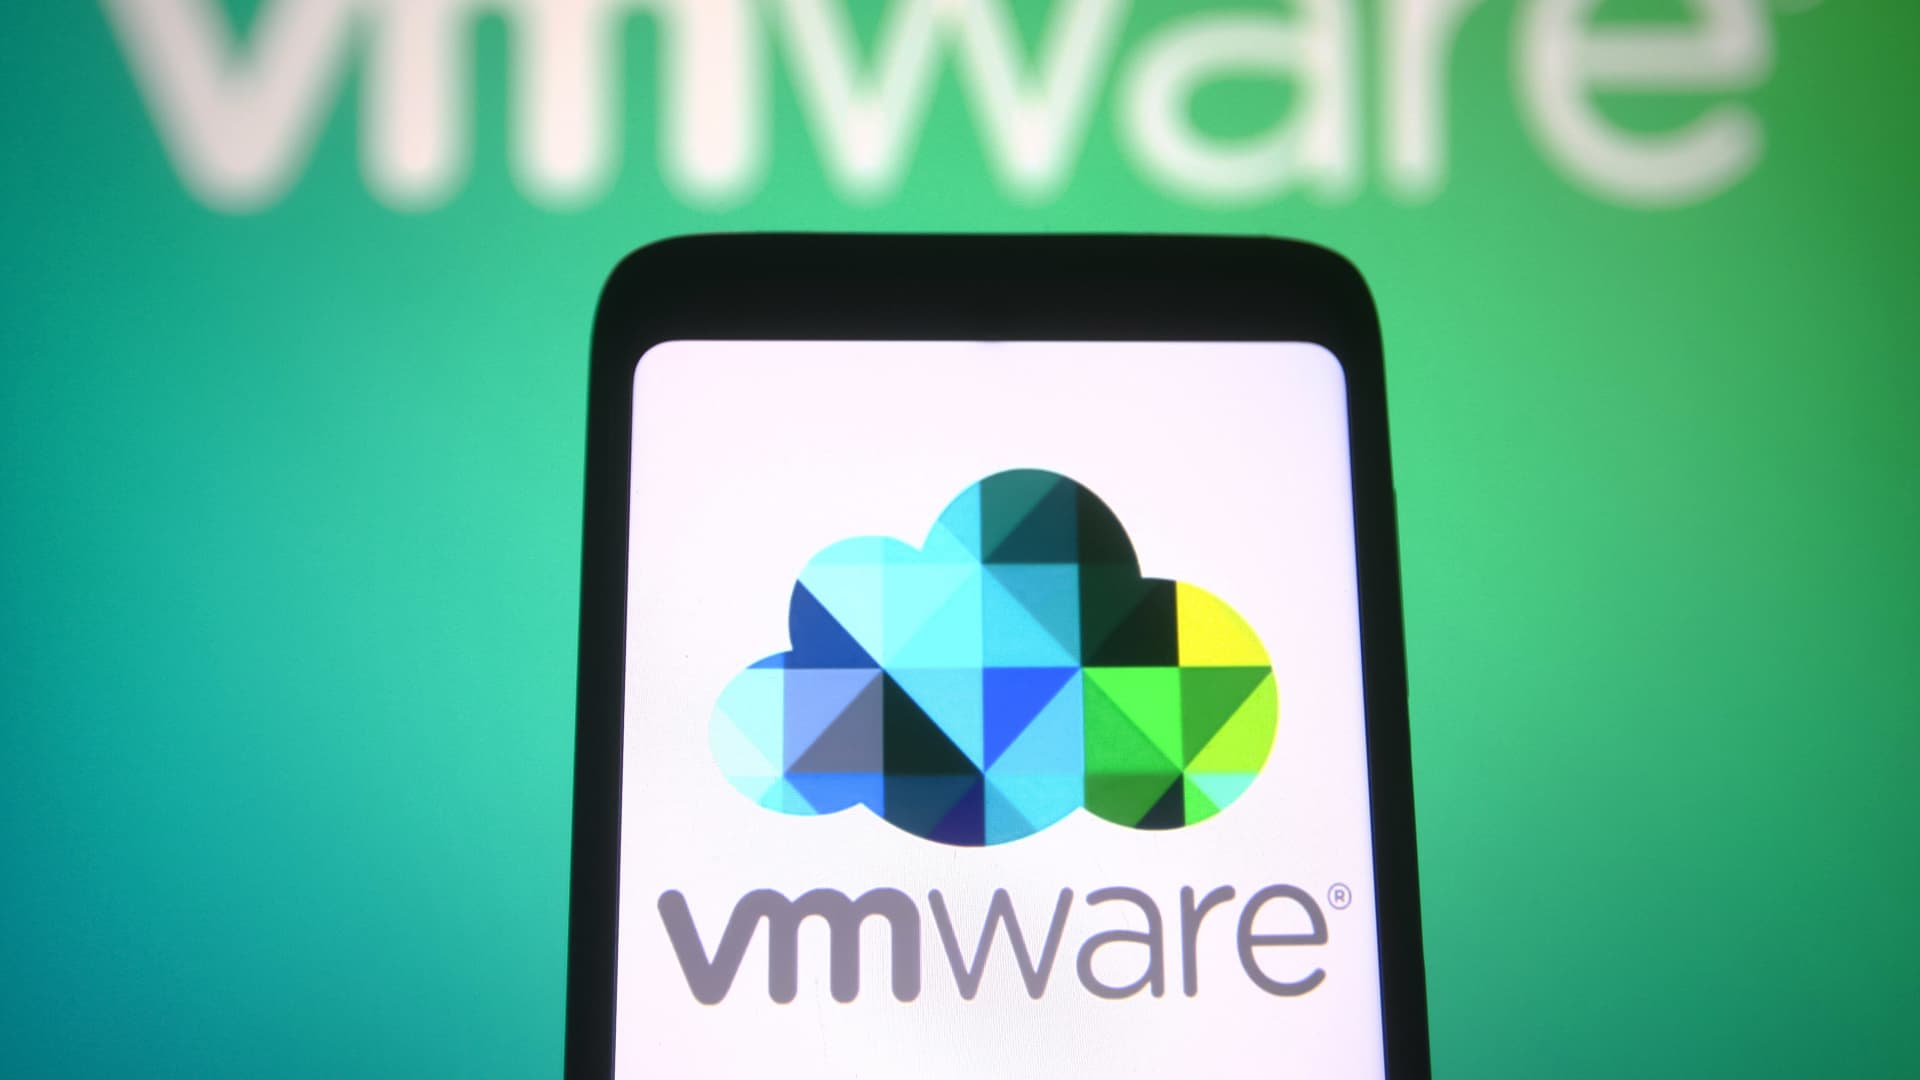 Según los informes, Broadcom está en conversaciones para comprar VMware